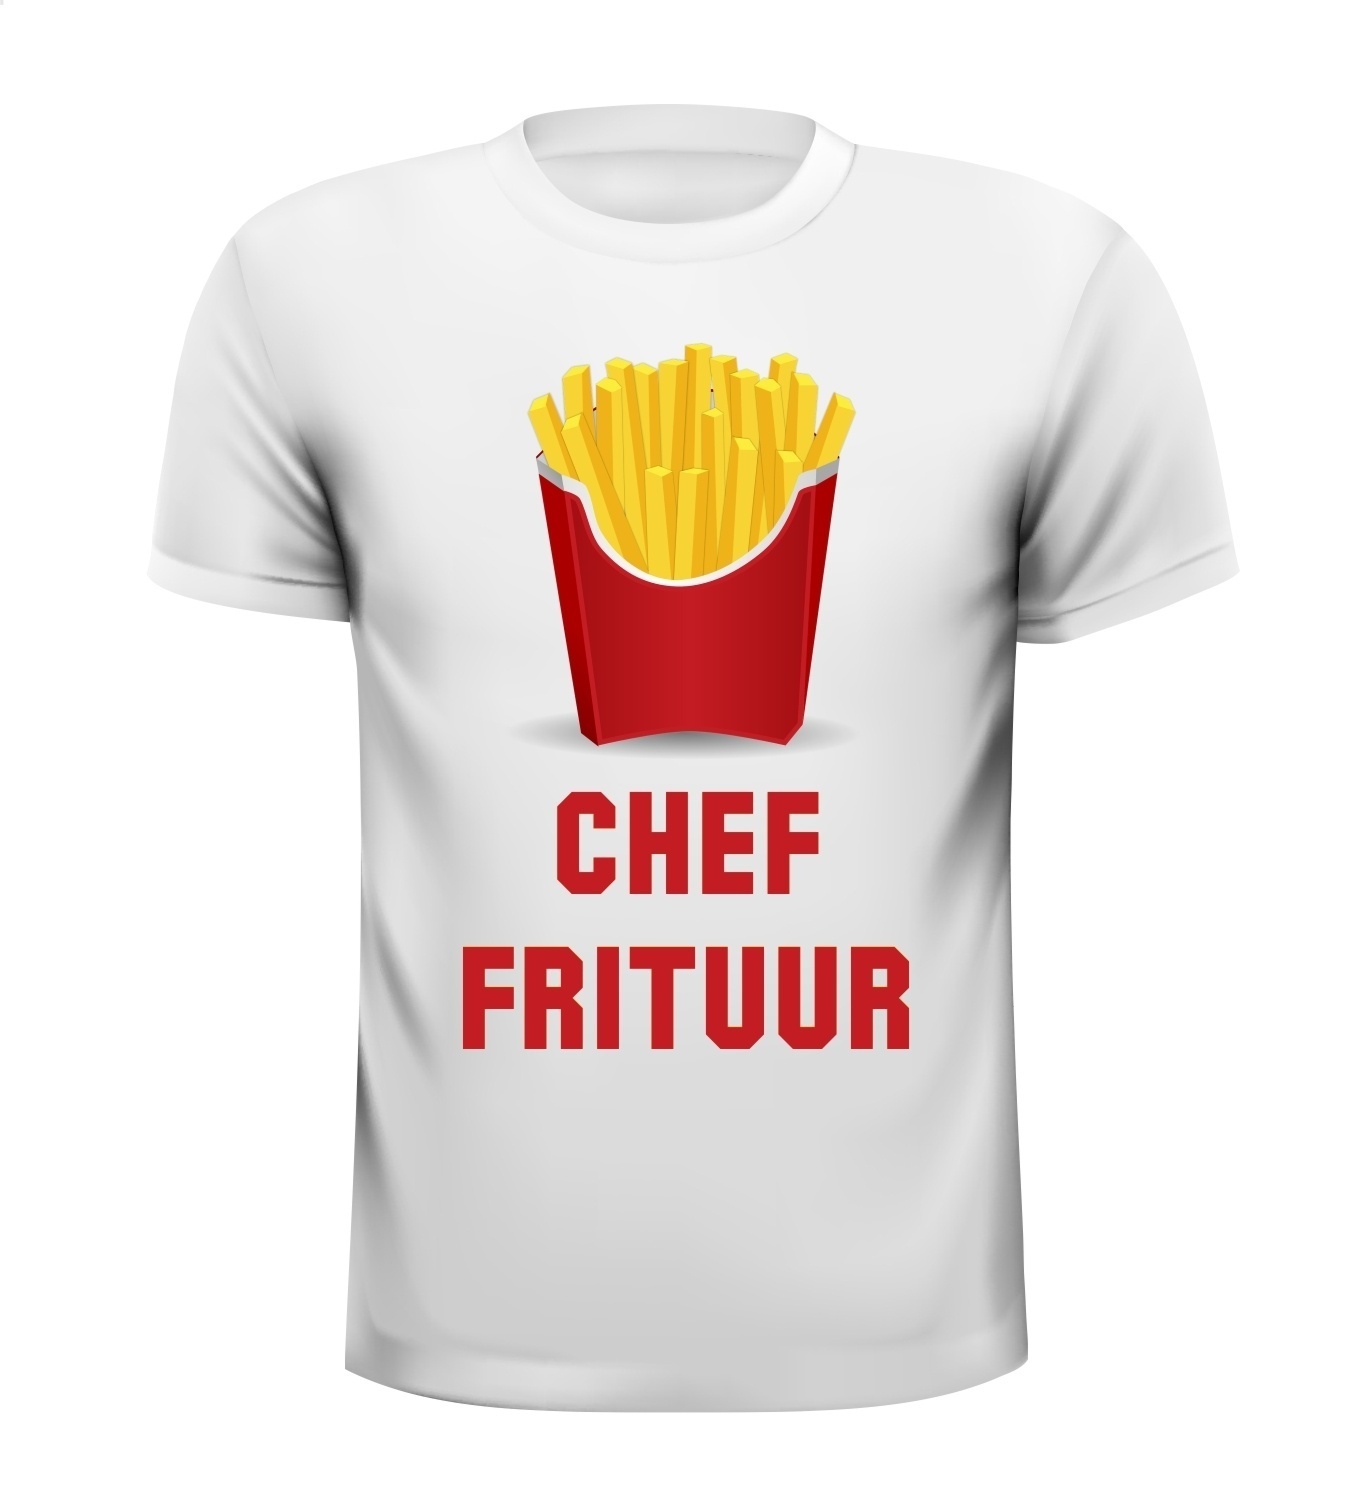 Chef frituur humor grappig gek shirt